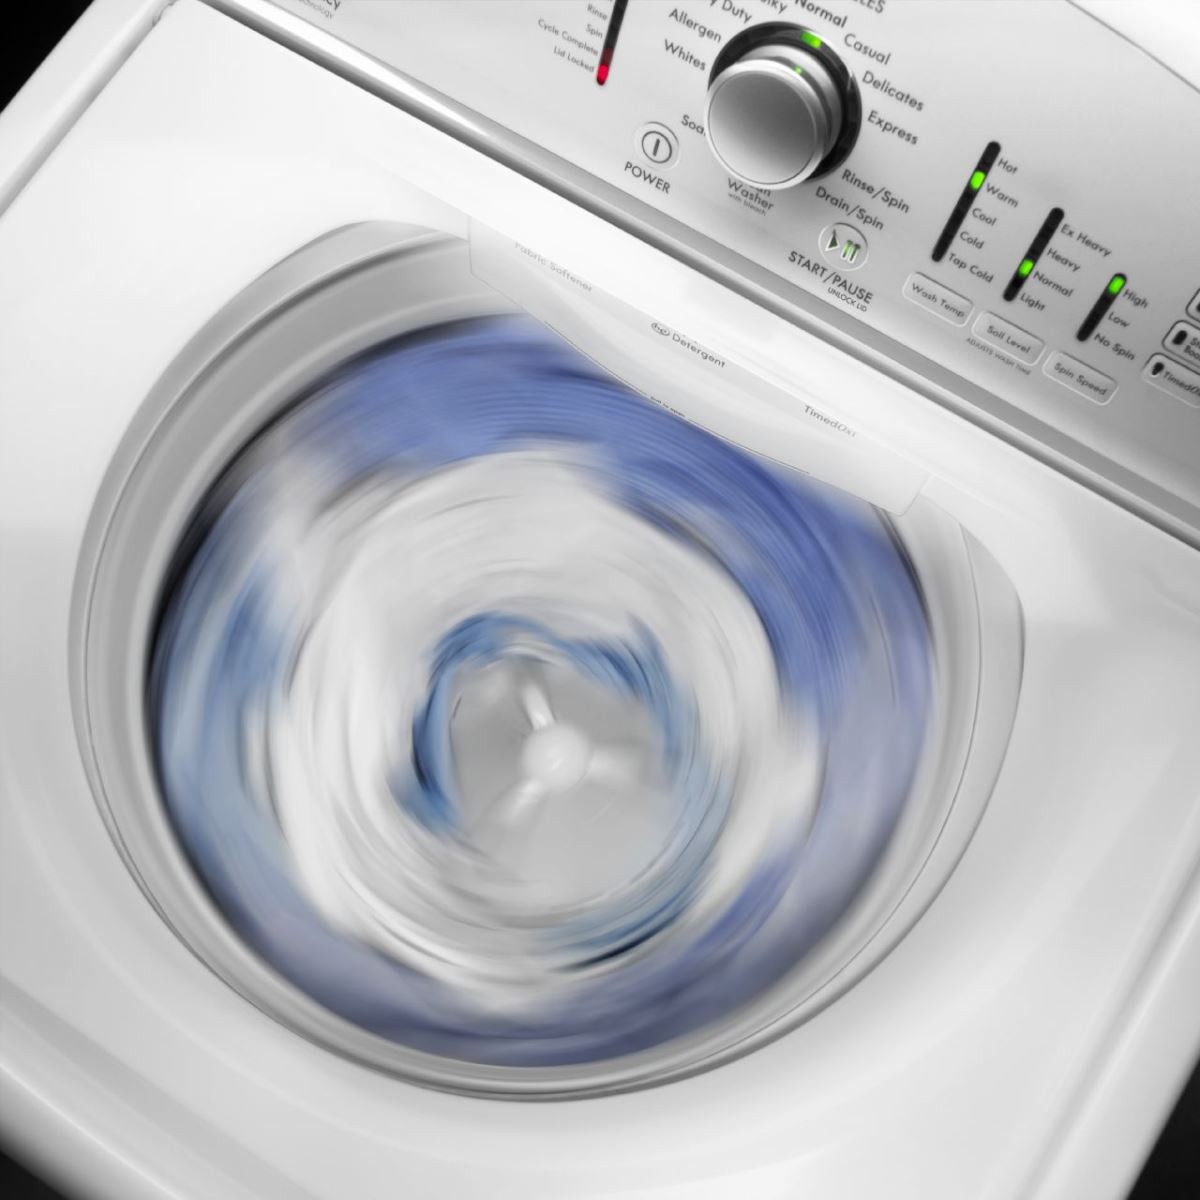 chế độ vắt của máy giặt - hình 3